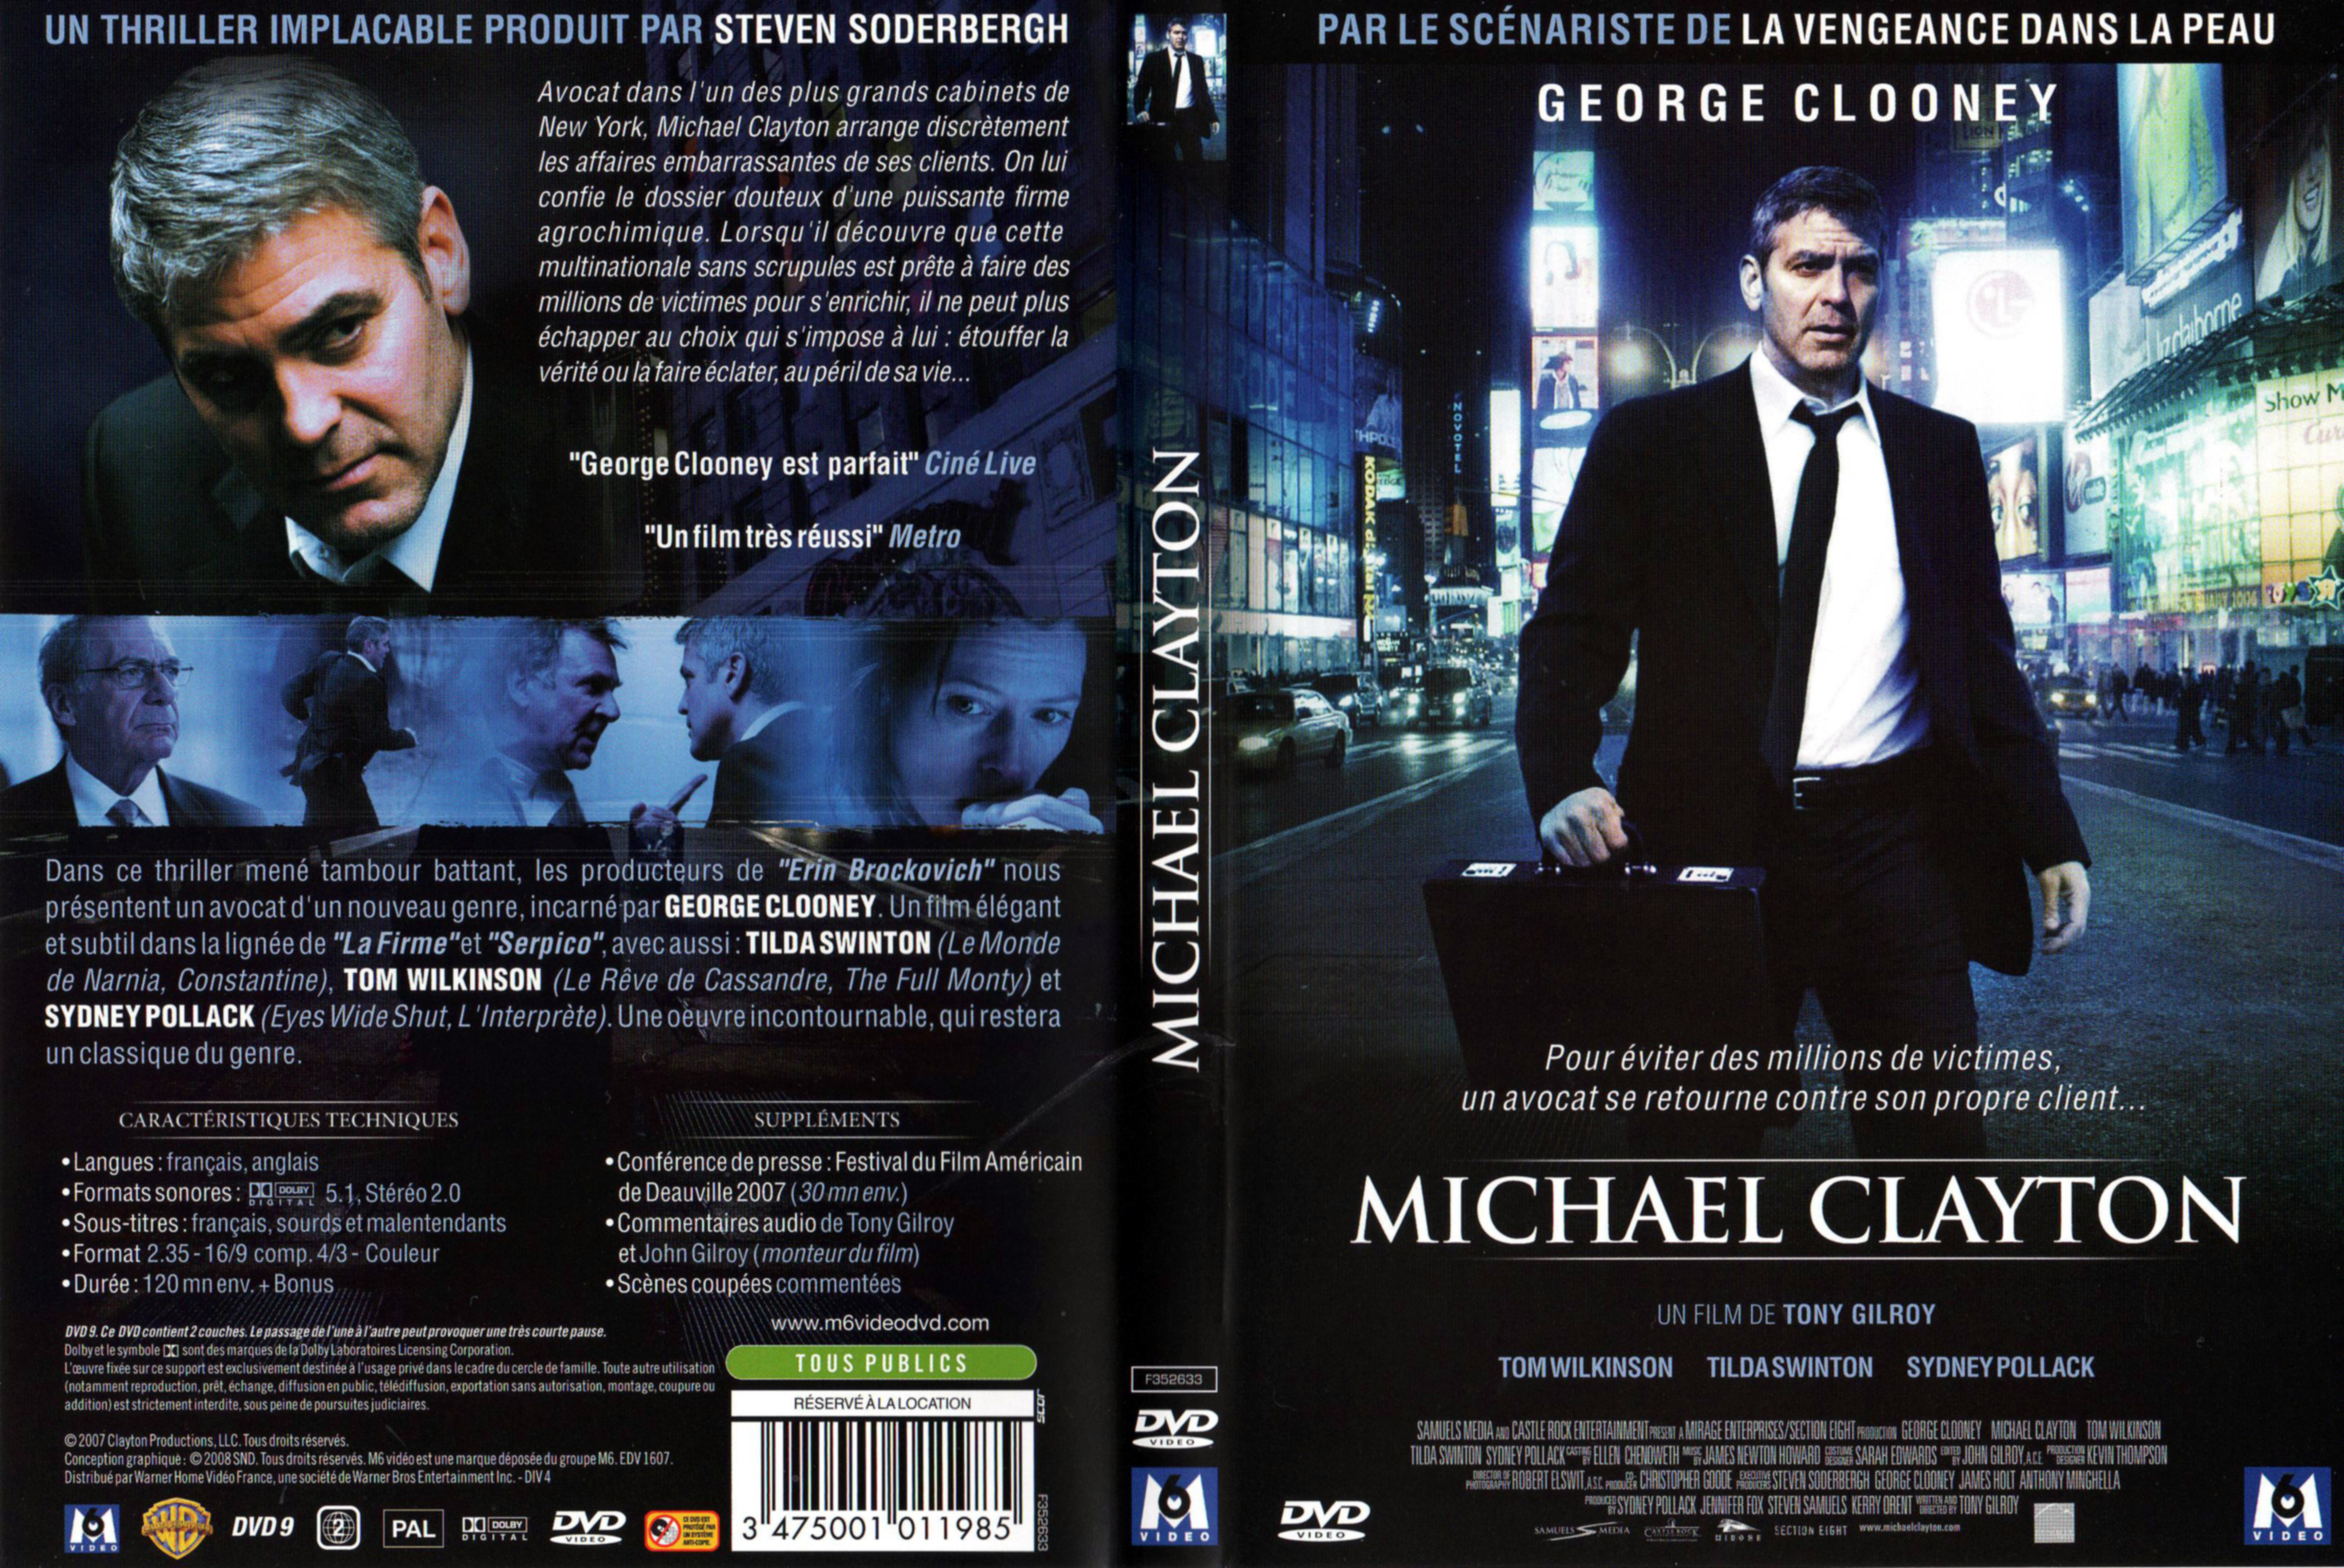 Jaquette DVD Michael Clayton